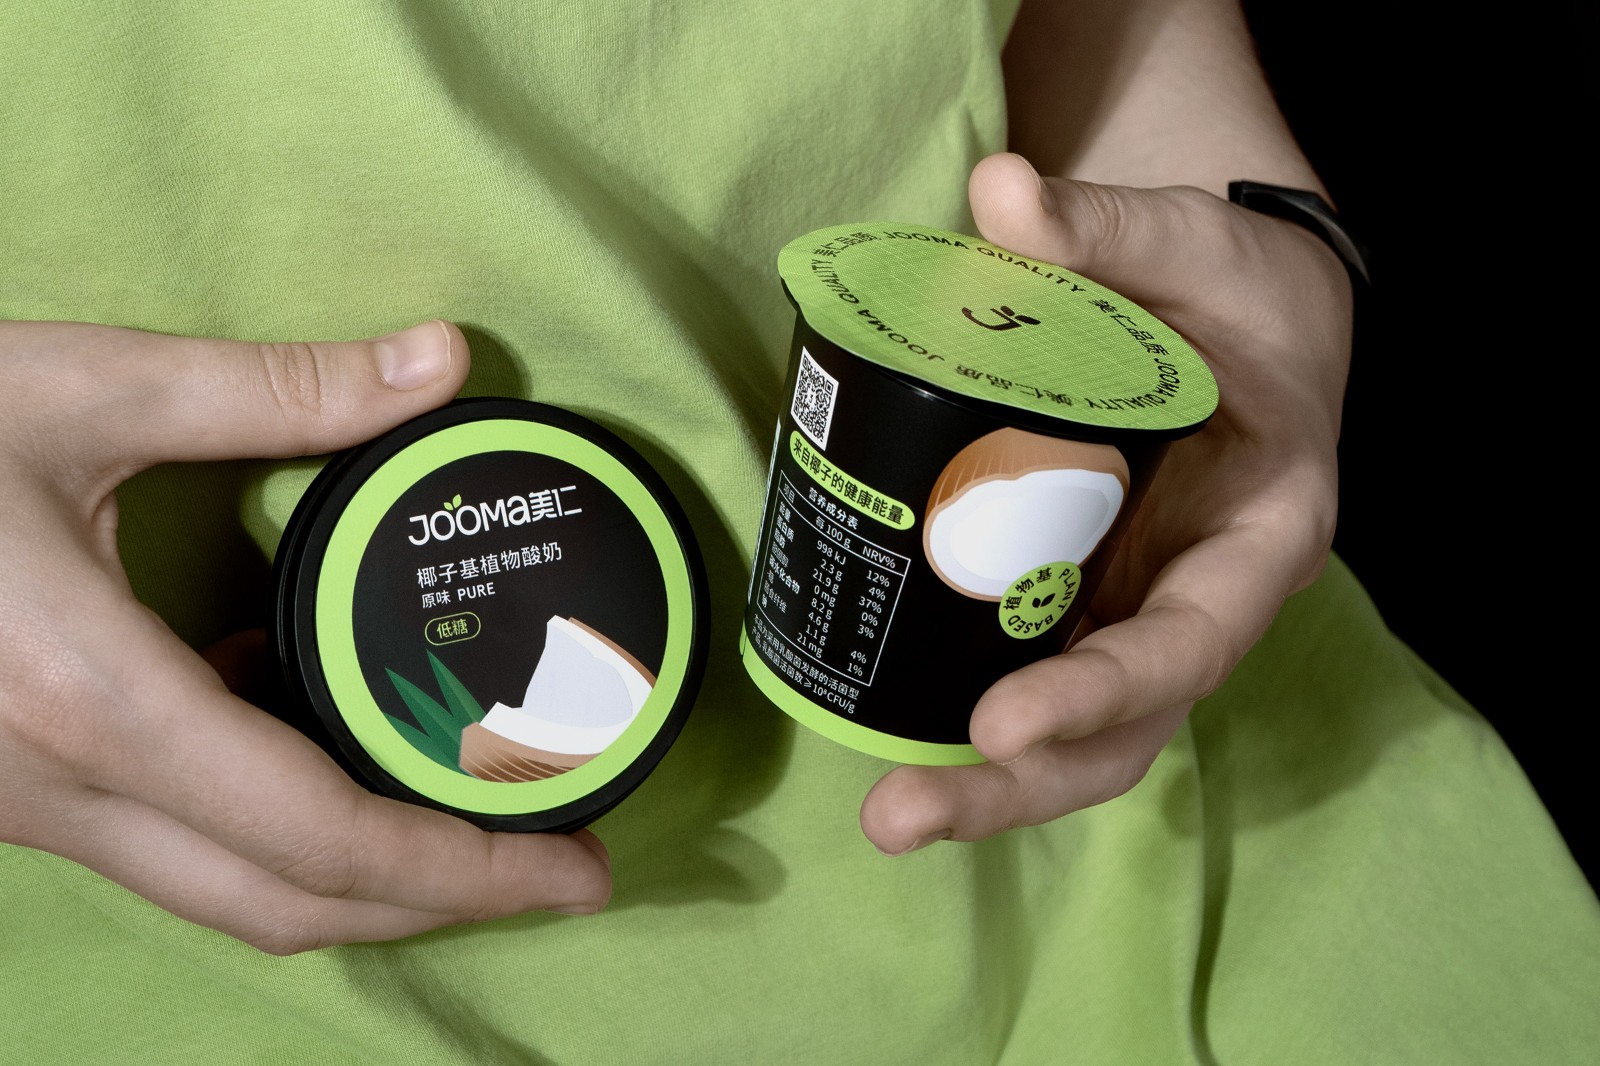 椰子酸奶包装盒设计案例图集 